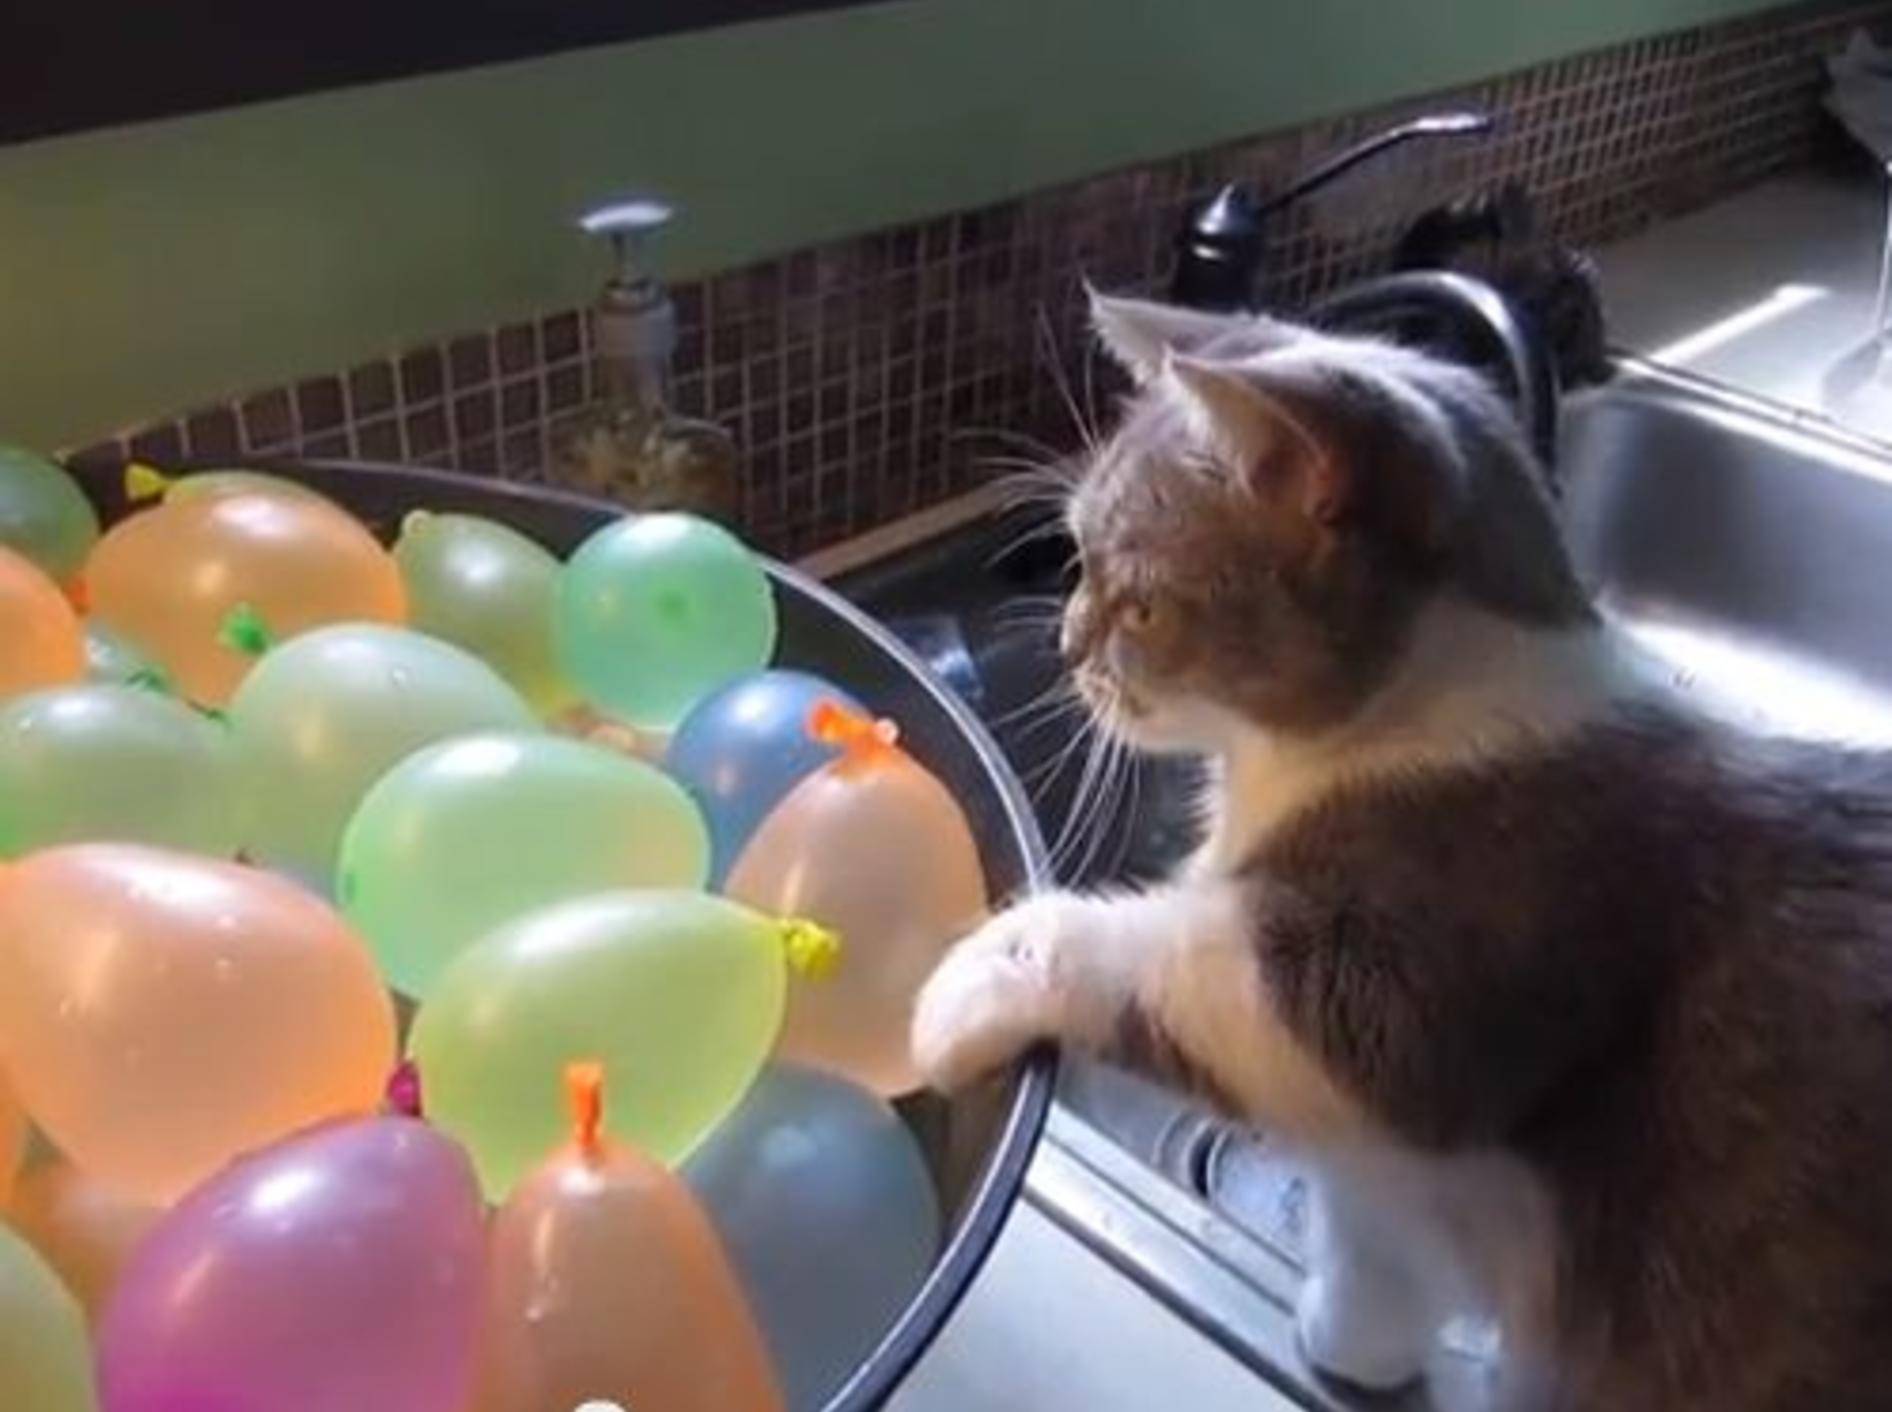 Diese Katze erlebt eine nasse Überraschung mit Wasserballons - Bild: Youtube / halonoir0·